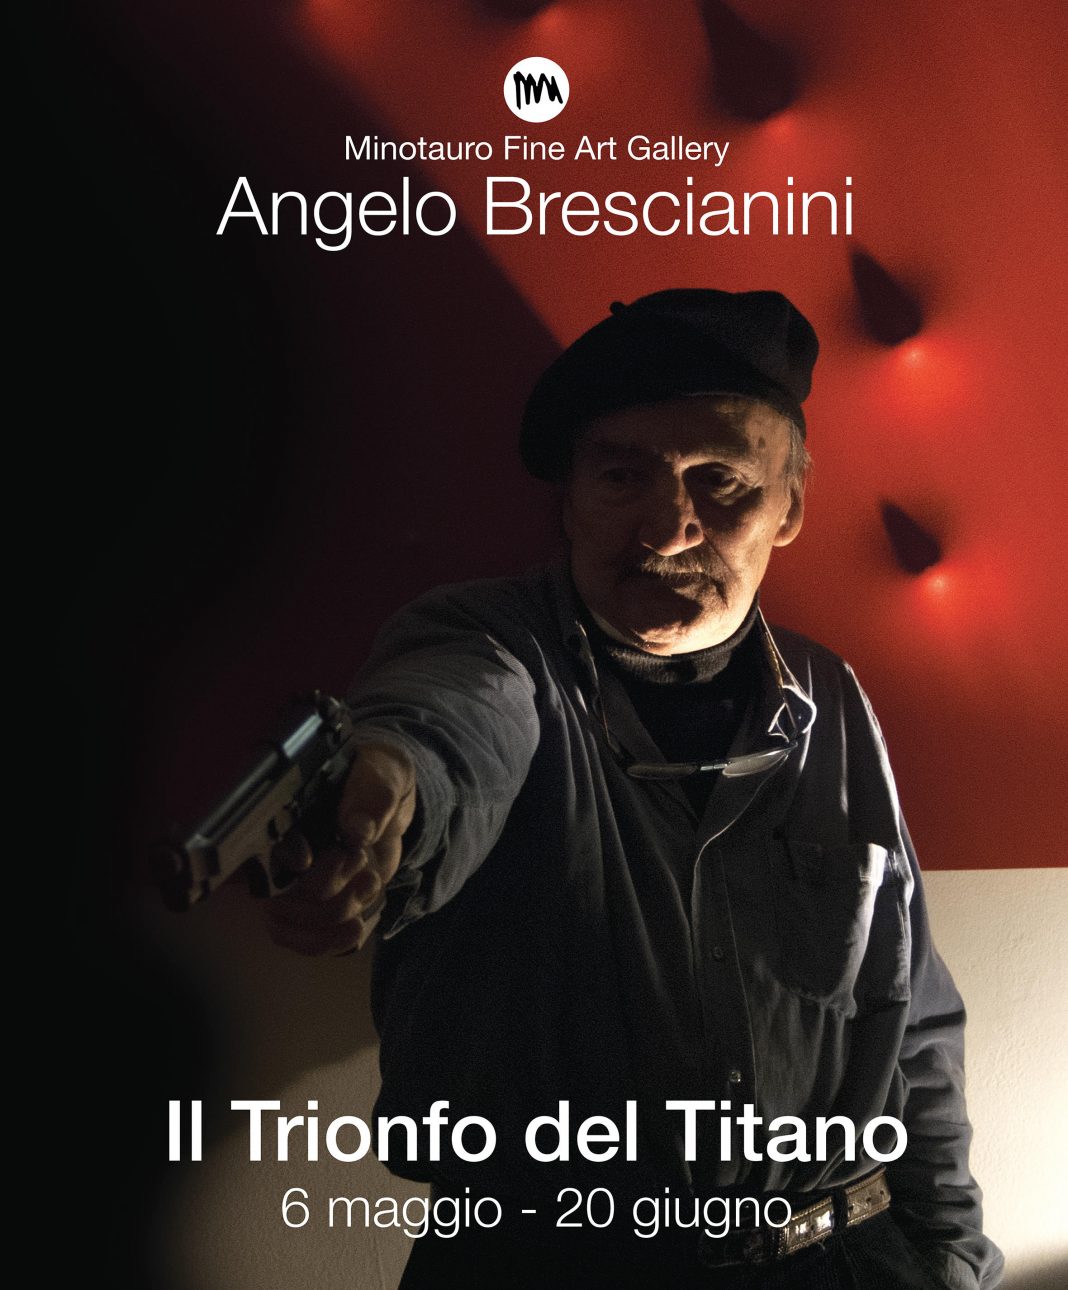 Angelo Brescianini – Il Trionfo del Titanohttps://www.exibart.com/repository/media/eventi/2017/04/angelo-brescianini-8211-il-trionfo-del-titano-1068x1290.jpg